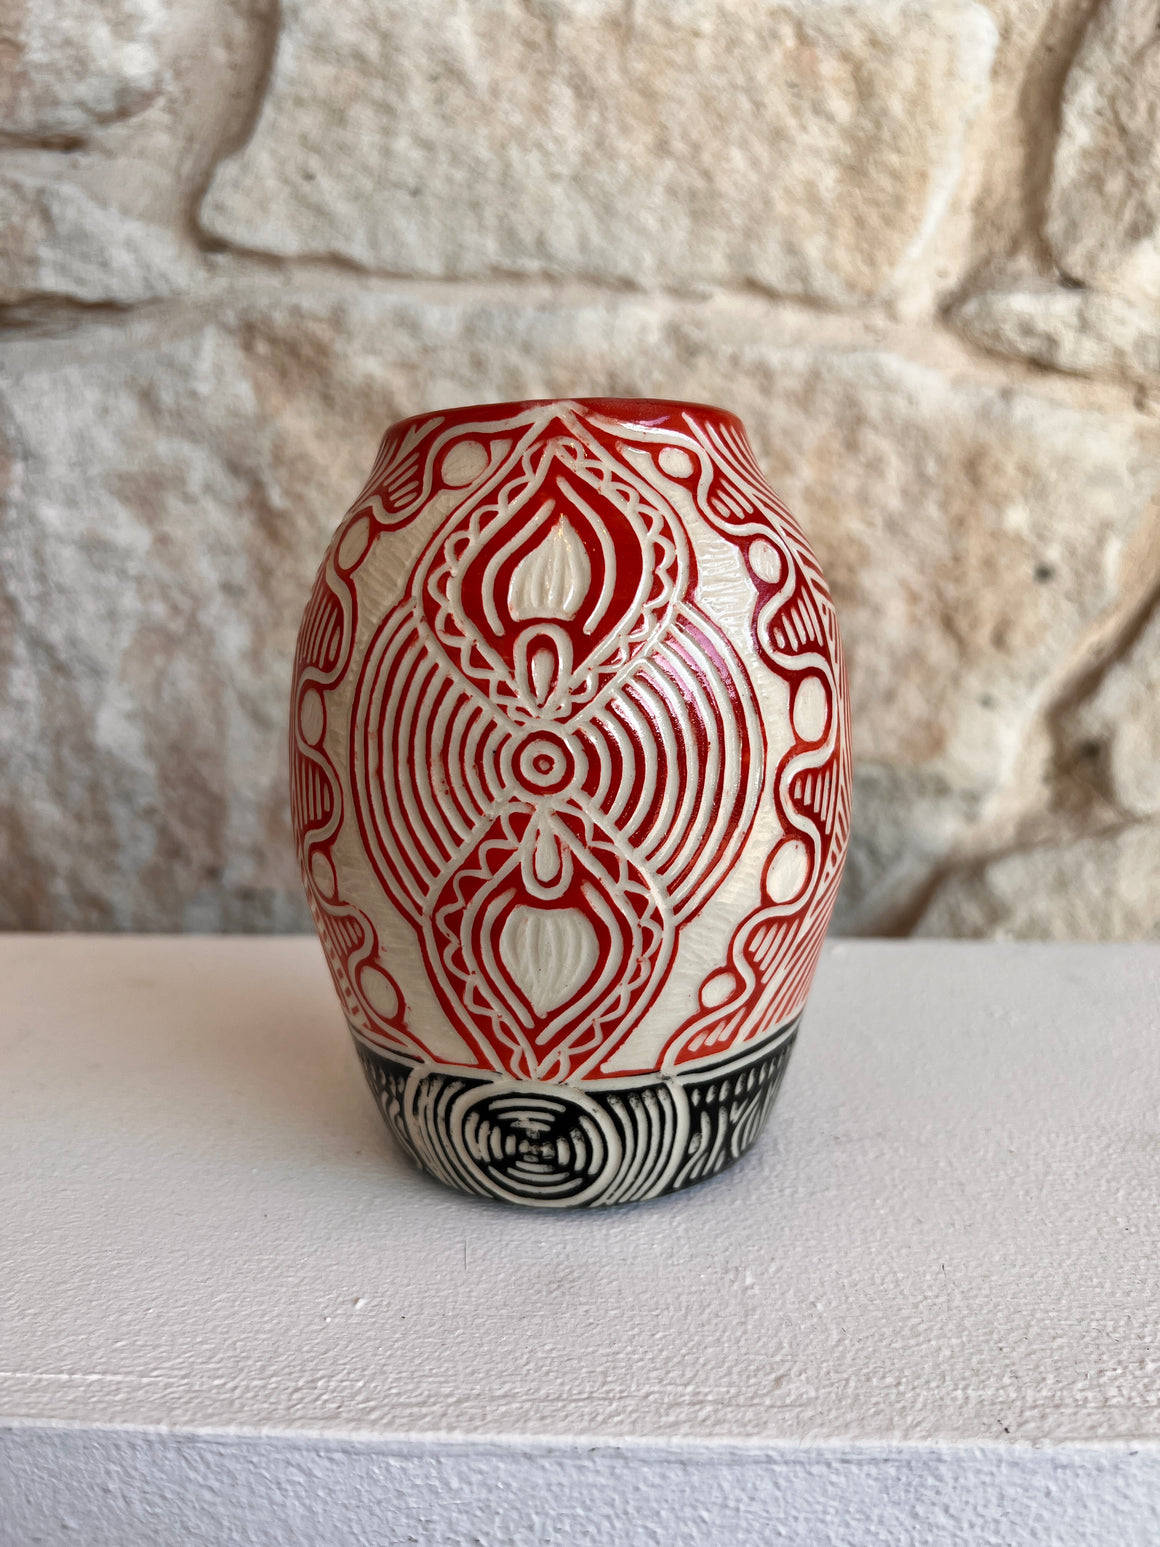 Fiona Wells - Ceramic